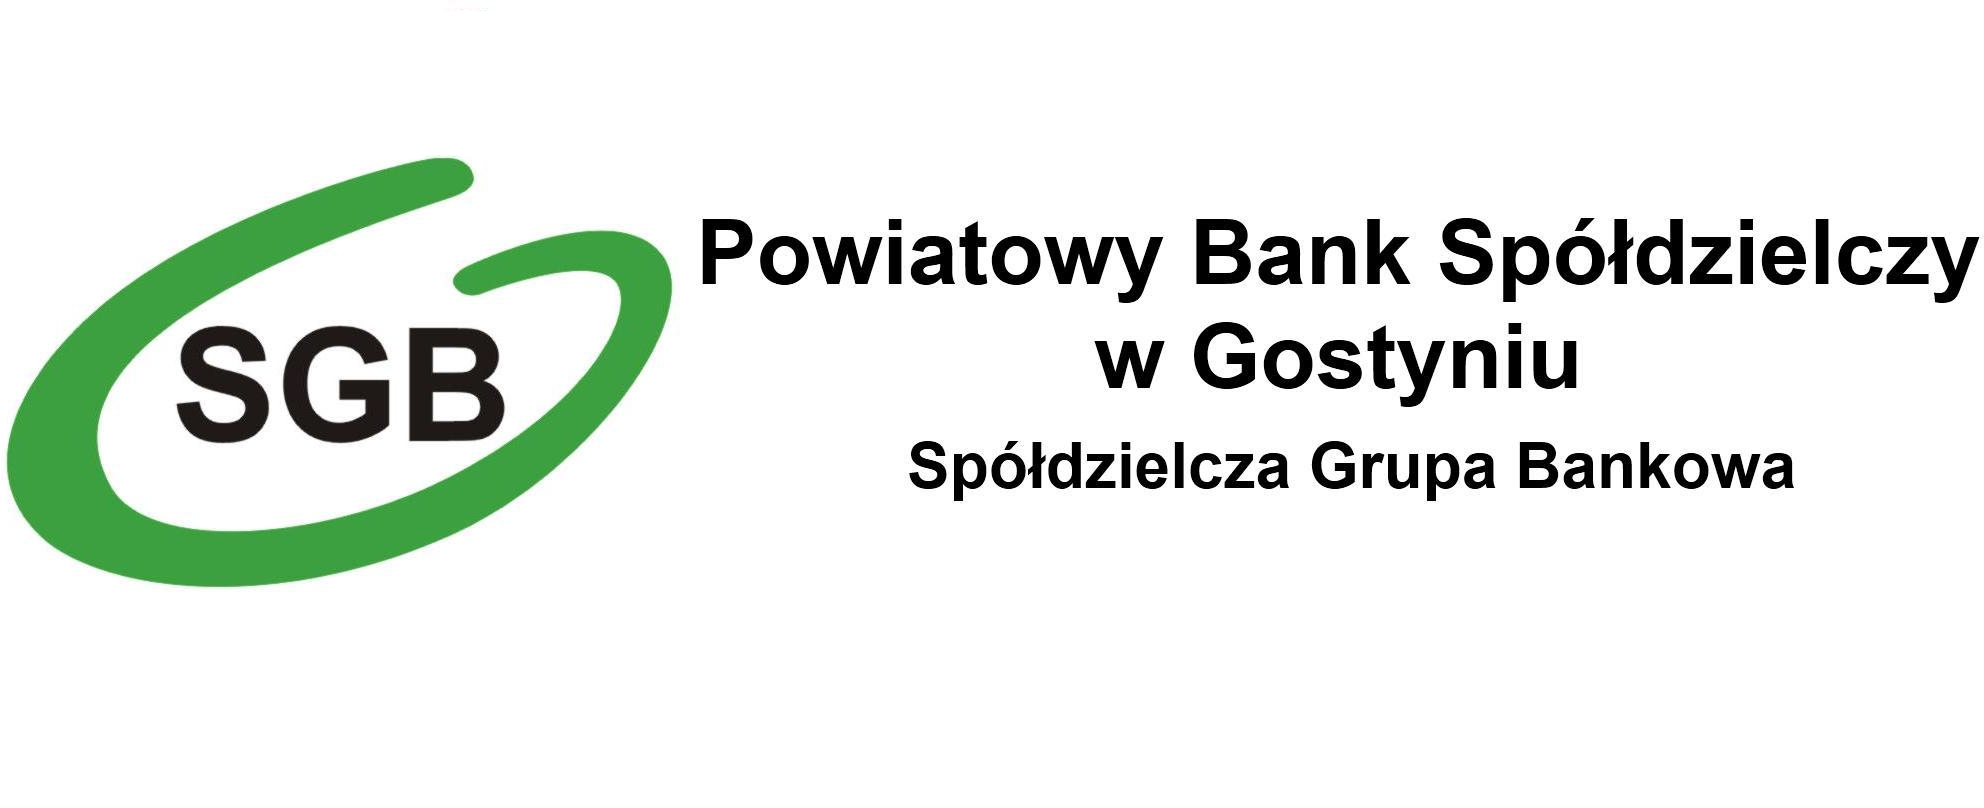 Wnioski o Tarczę Finansową PFR - aktualizacja z dnia 21.04.2021 - Powiatowy Bank Spółdzielczy w Gostyniu